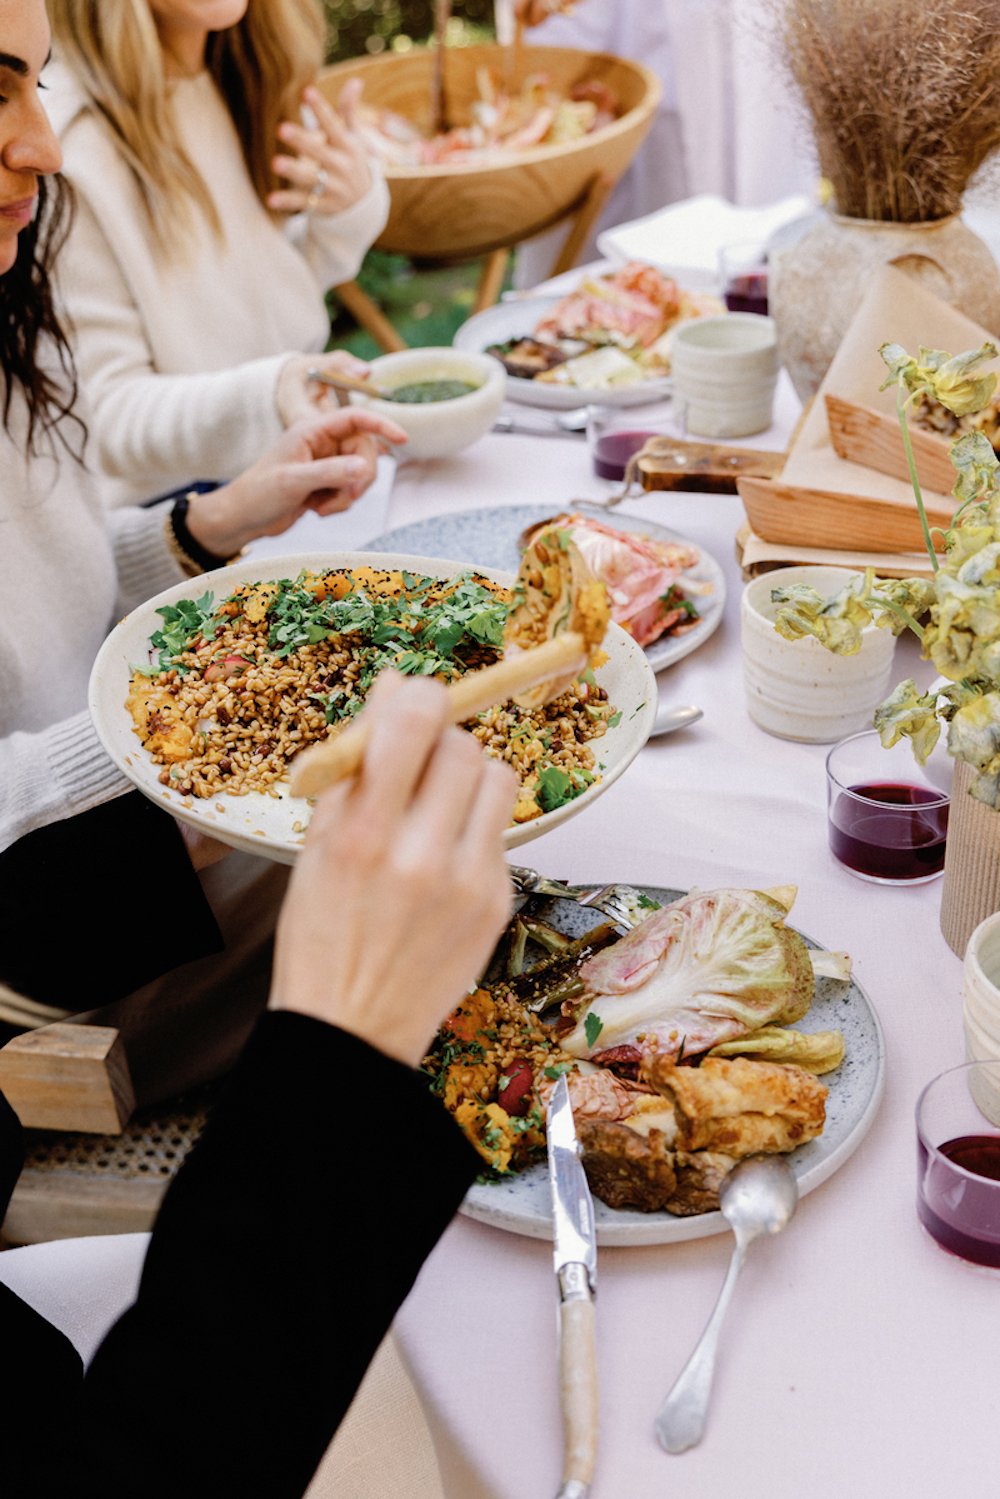 زنان در حال سرو غذا به سبک خانوادگی سر میز شام با رومیزی صورتی.